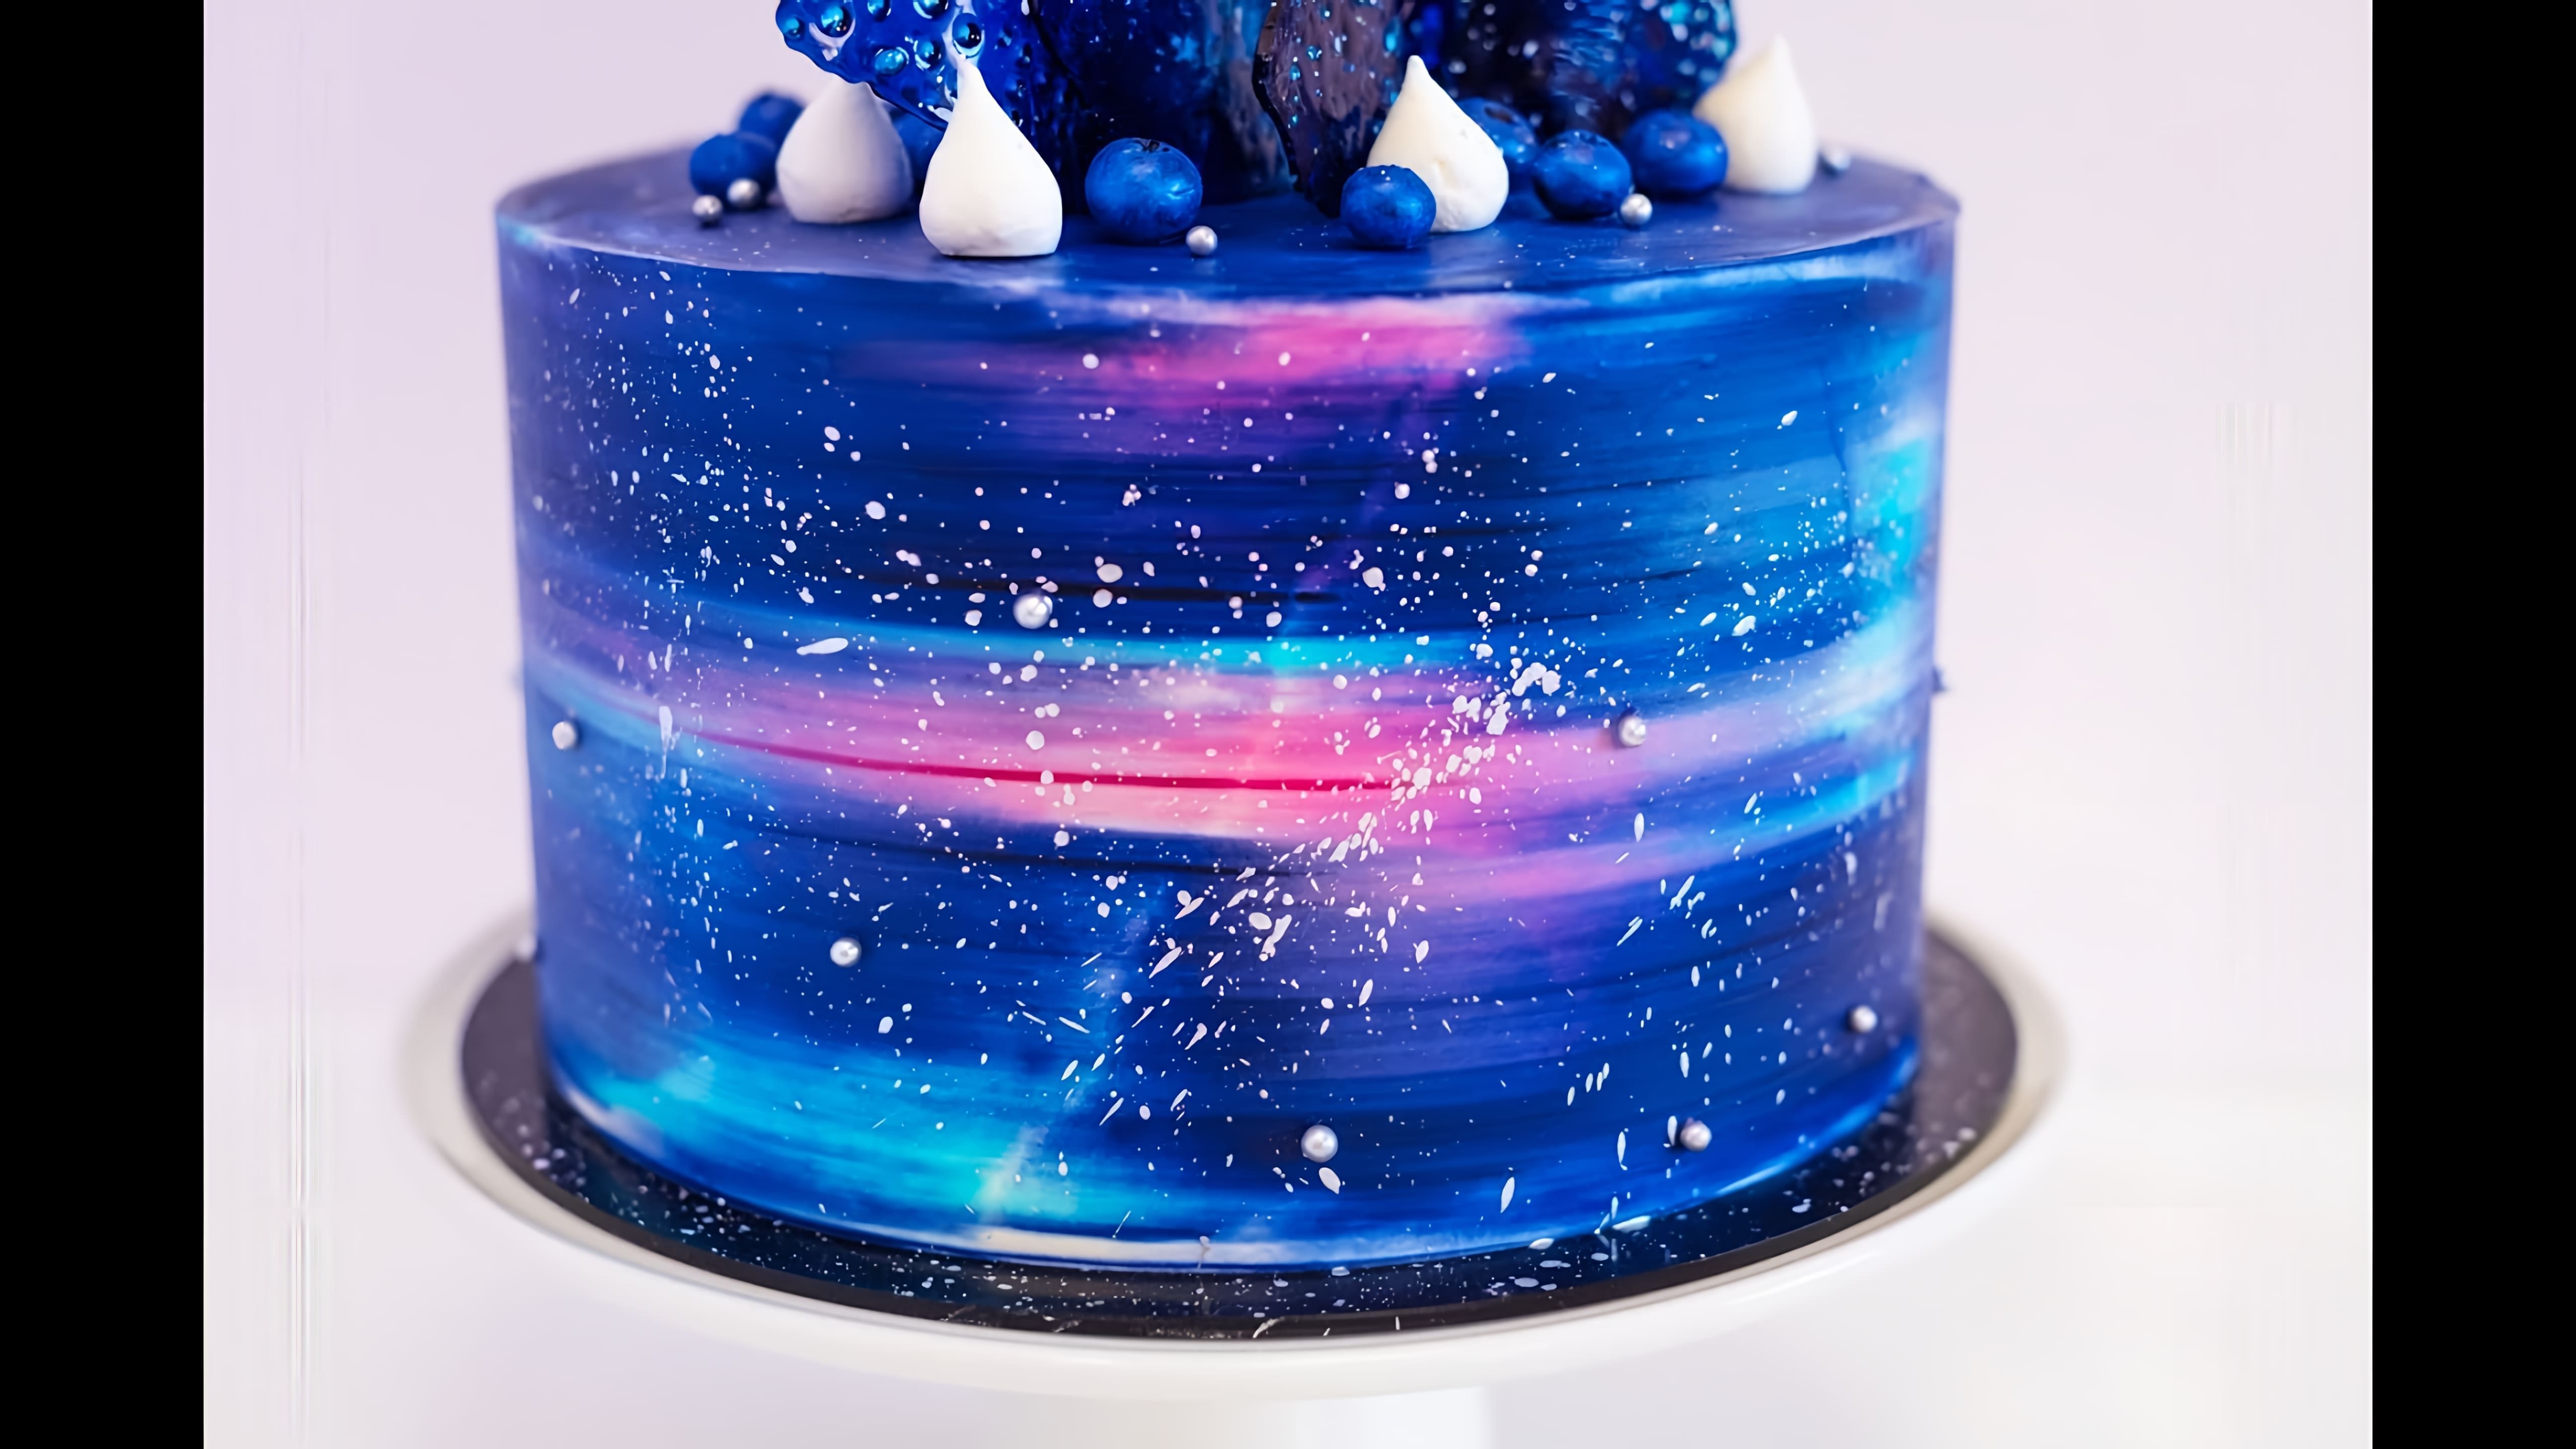 В этом видео показано, как задекорировать торт в космическом стиле